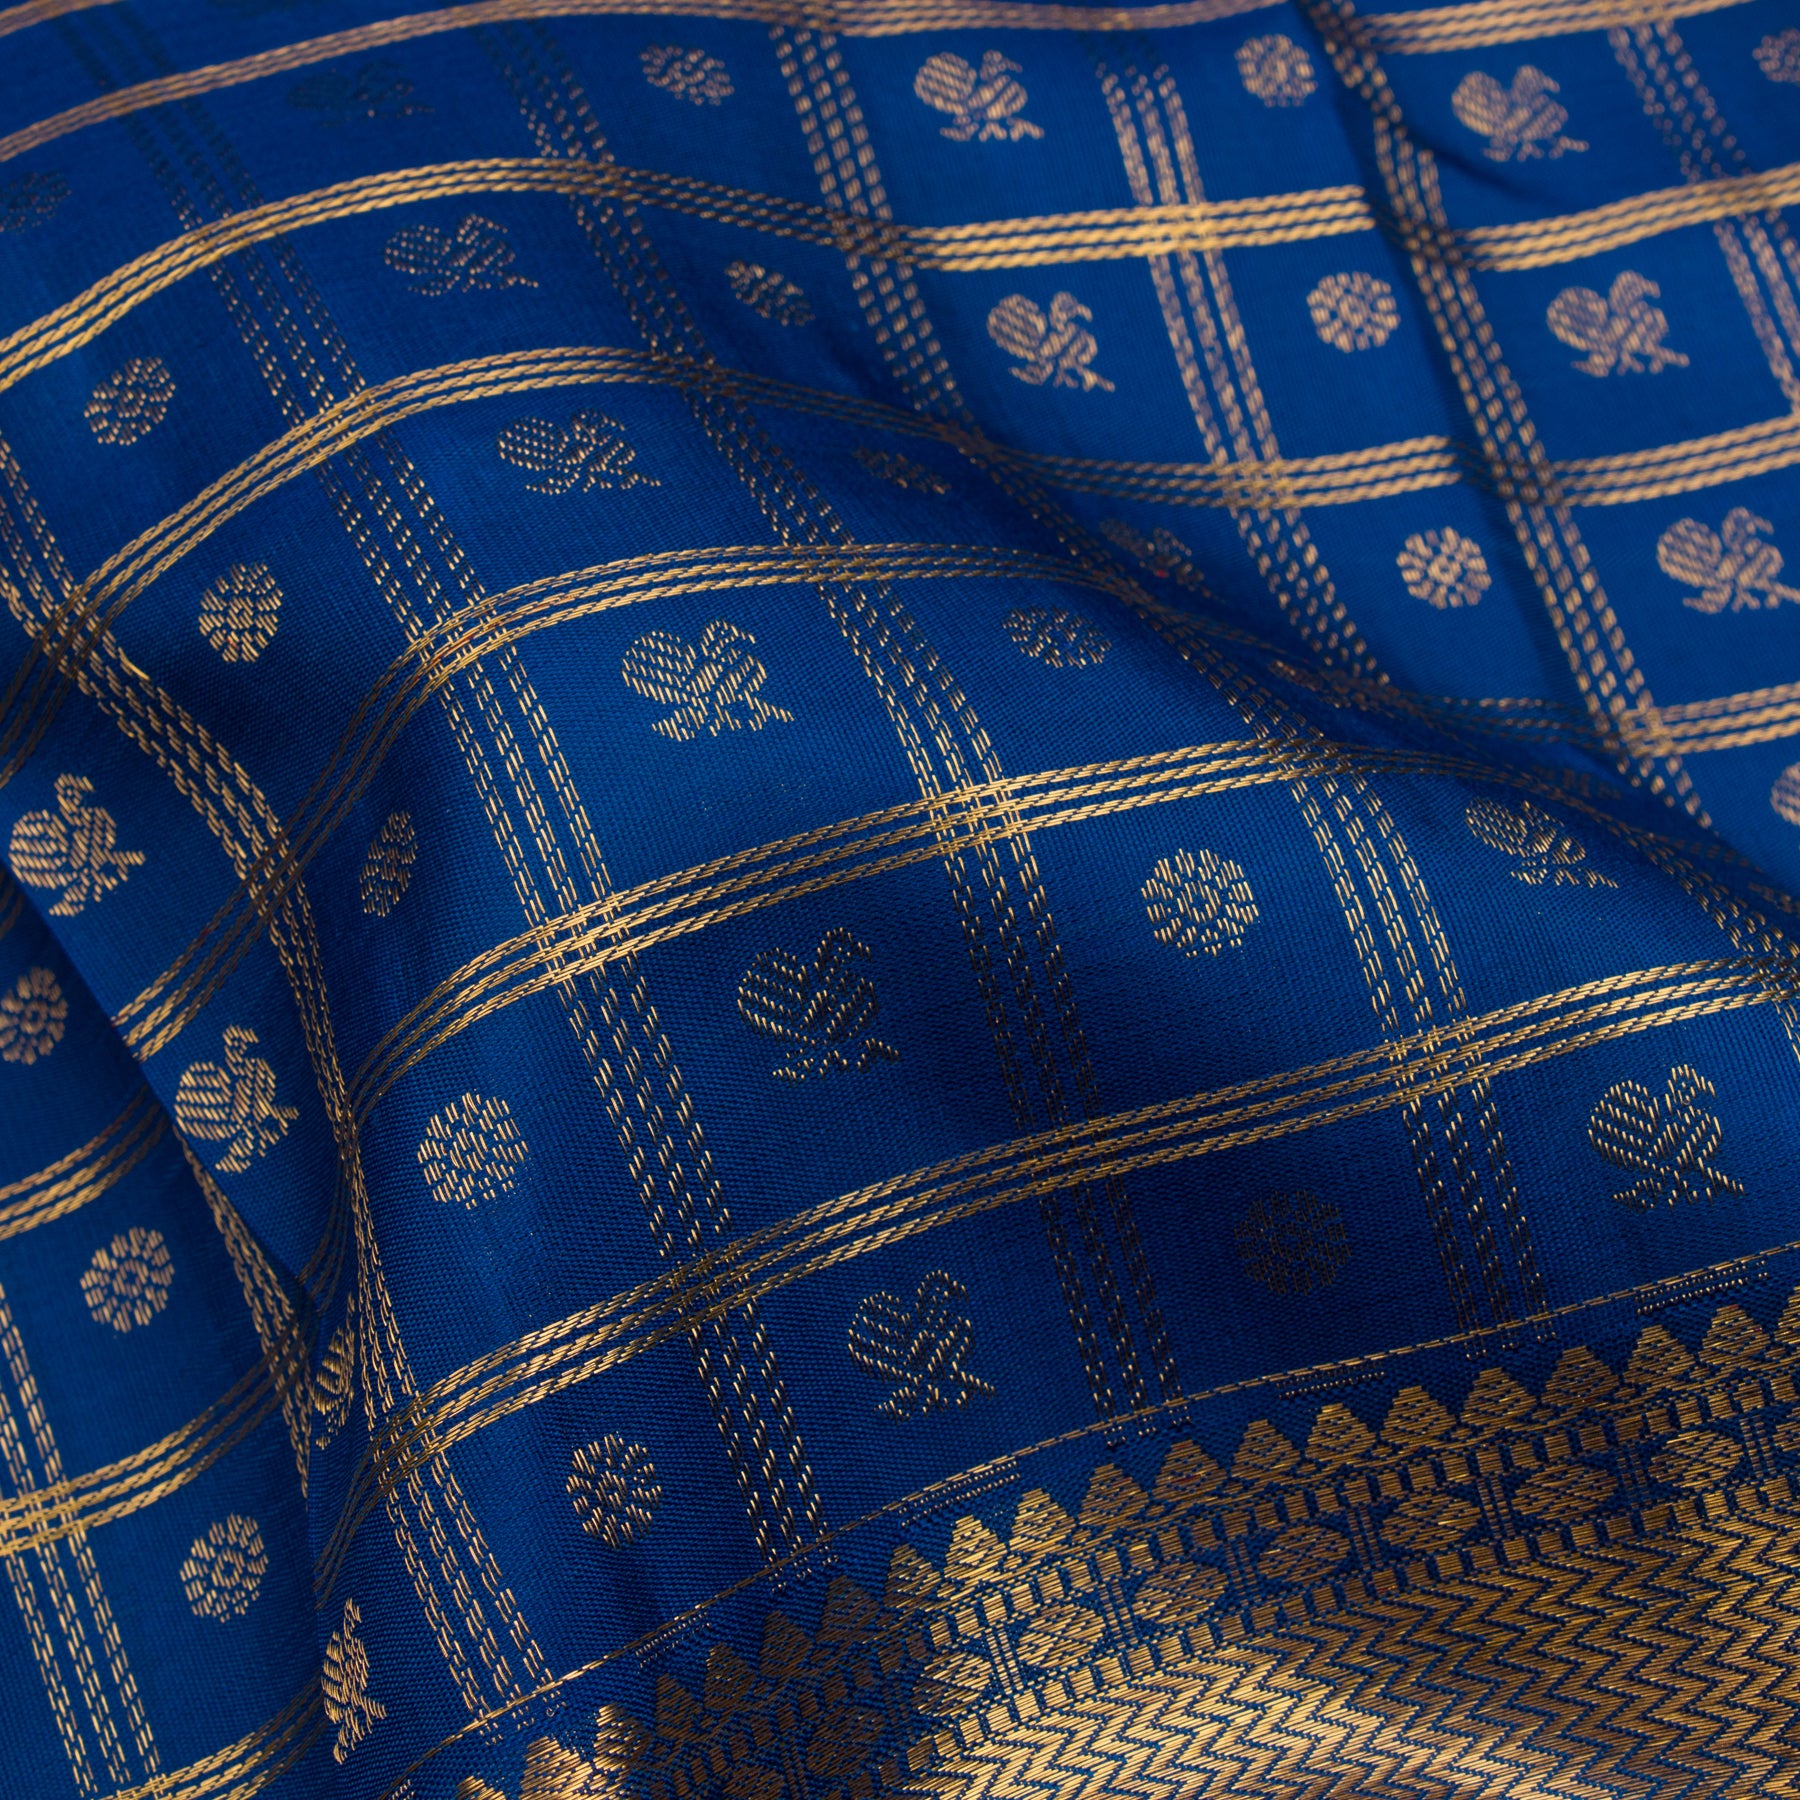 Kanakavalli Kanjivaram Silk Sari 23-611-HS001-04536 - Fabric View